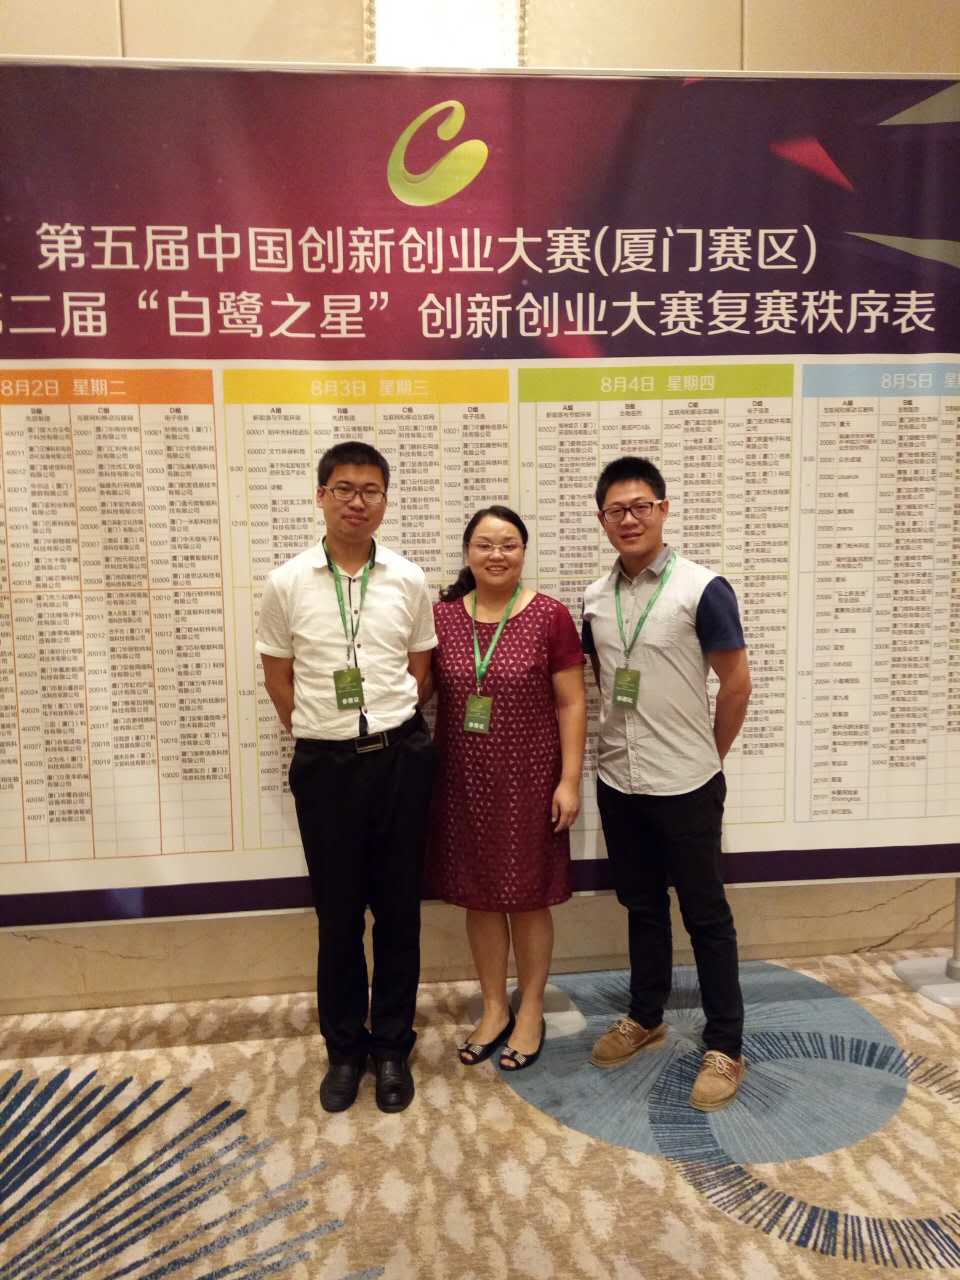 爱基因参加第五届中国创新创业大赛